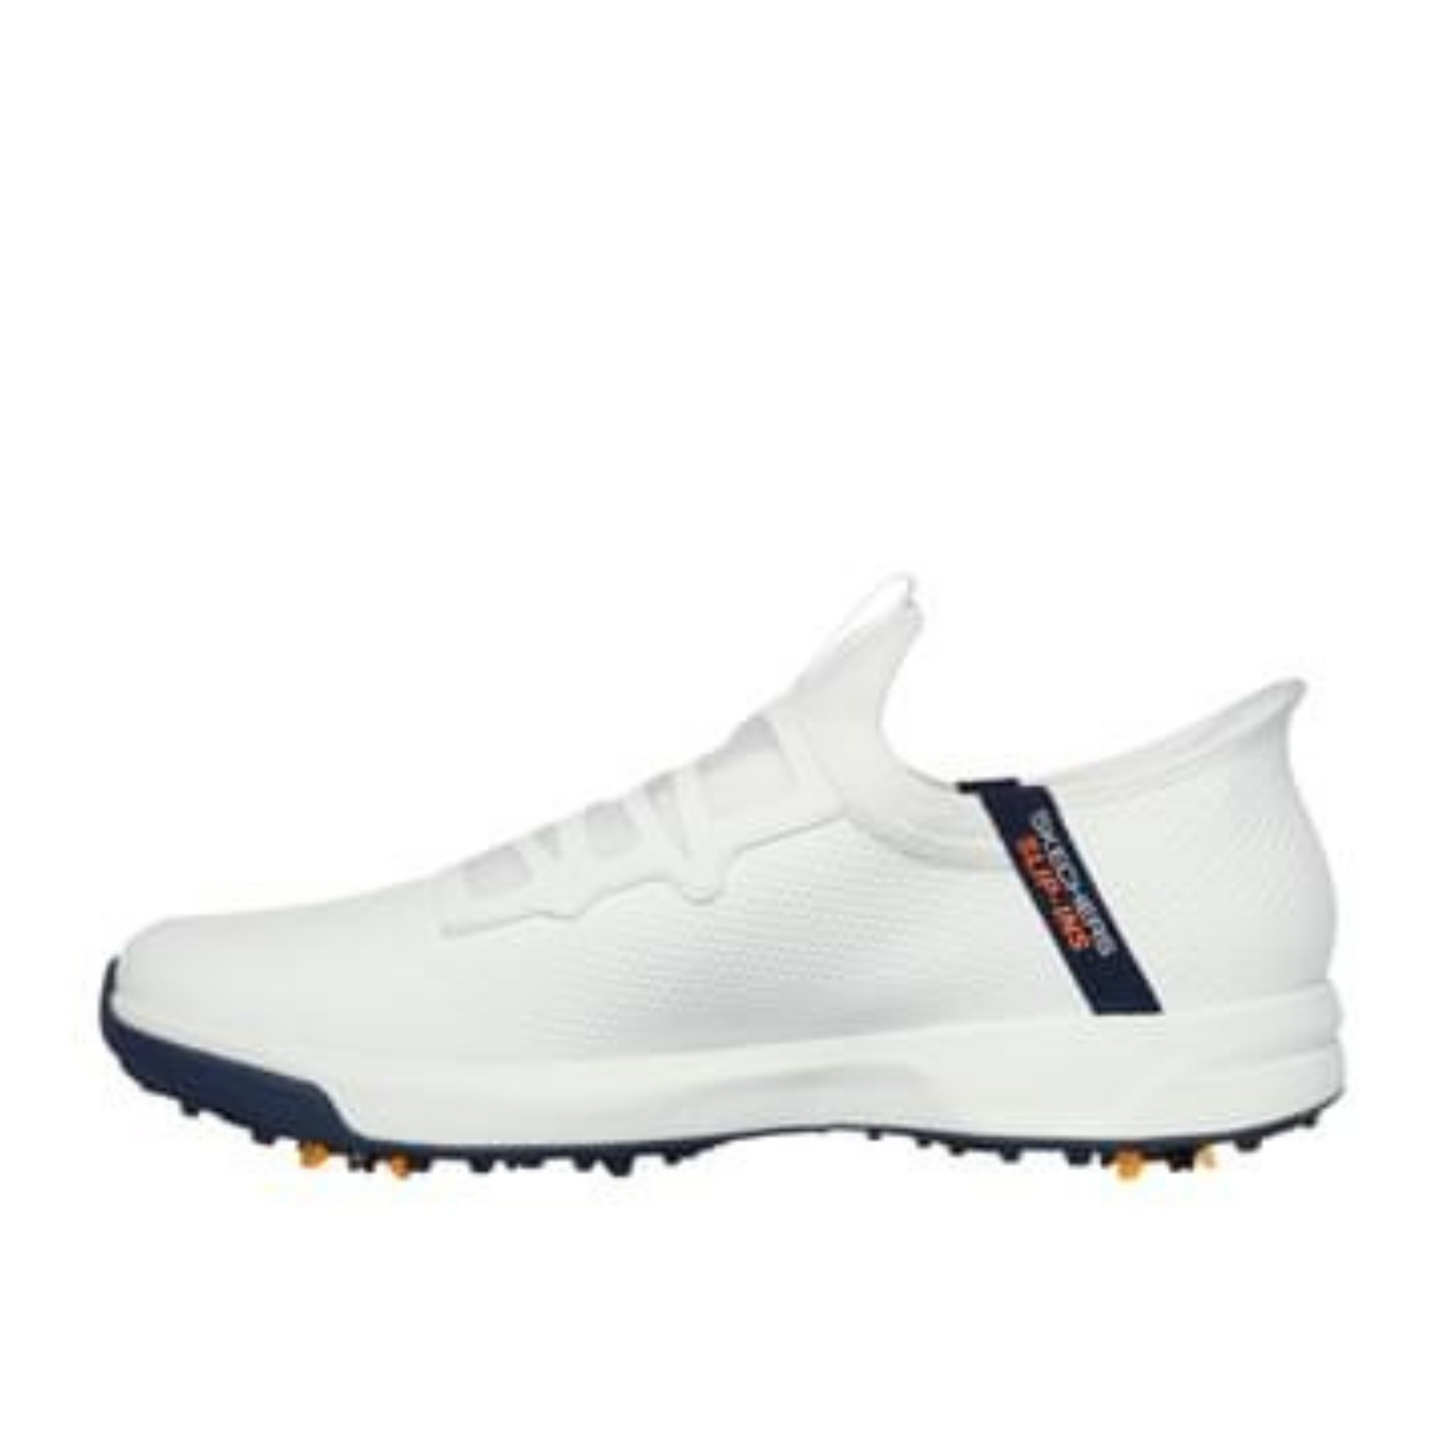 Skechers Elite Vortex Slip 'In Spiked Golf Shoes 214076 - White   